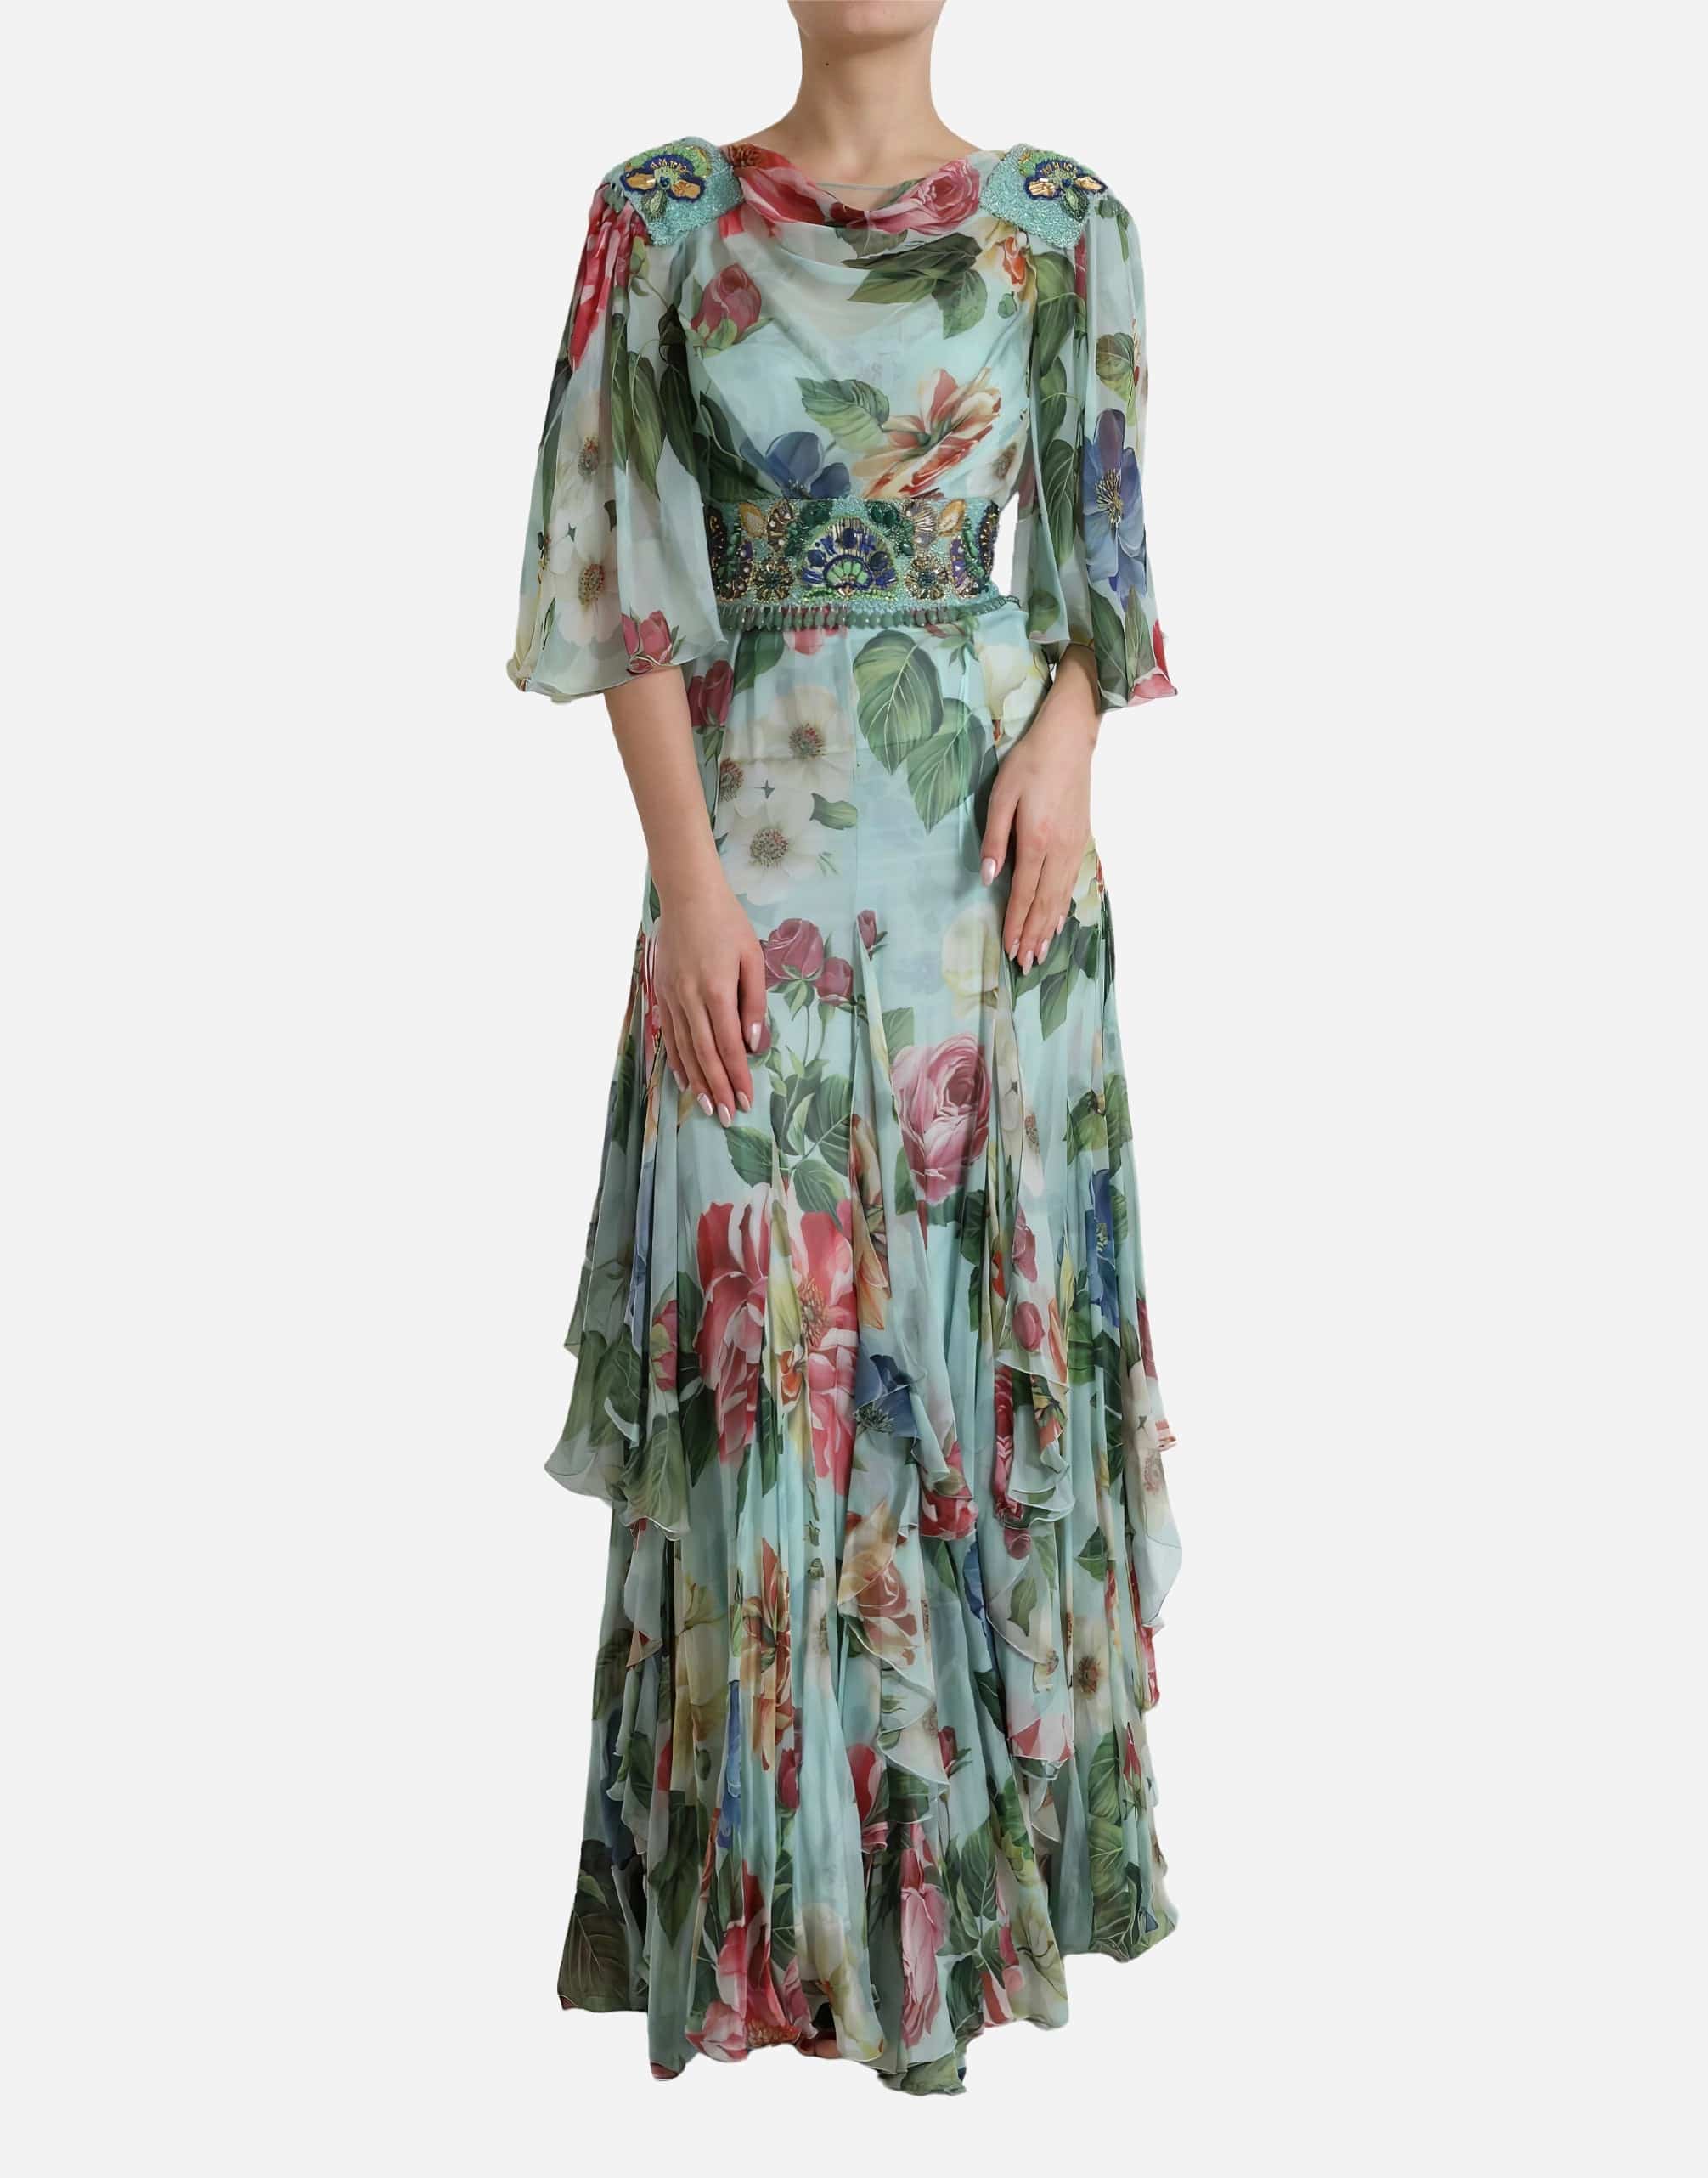 Dolce & Gabbana Floral Print Embellished Draped Neck Dress